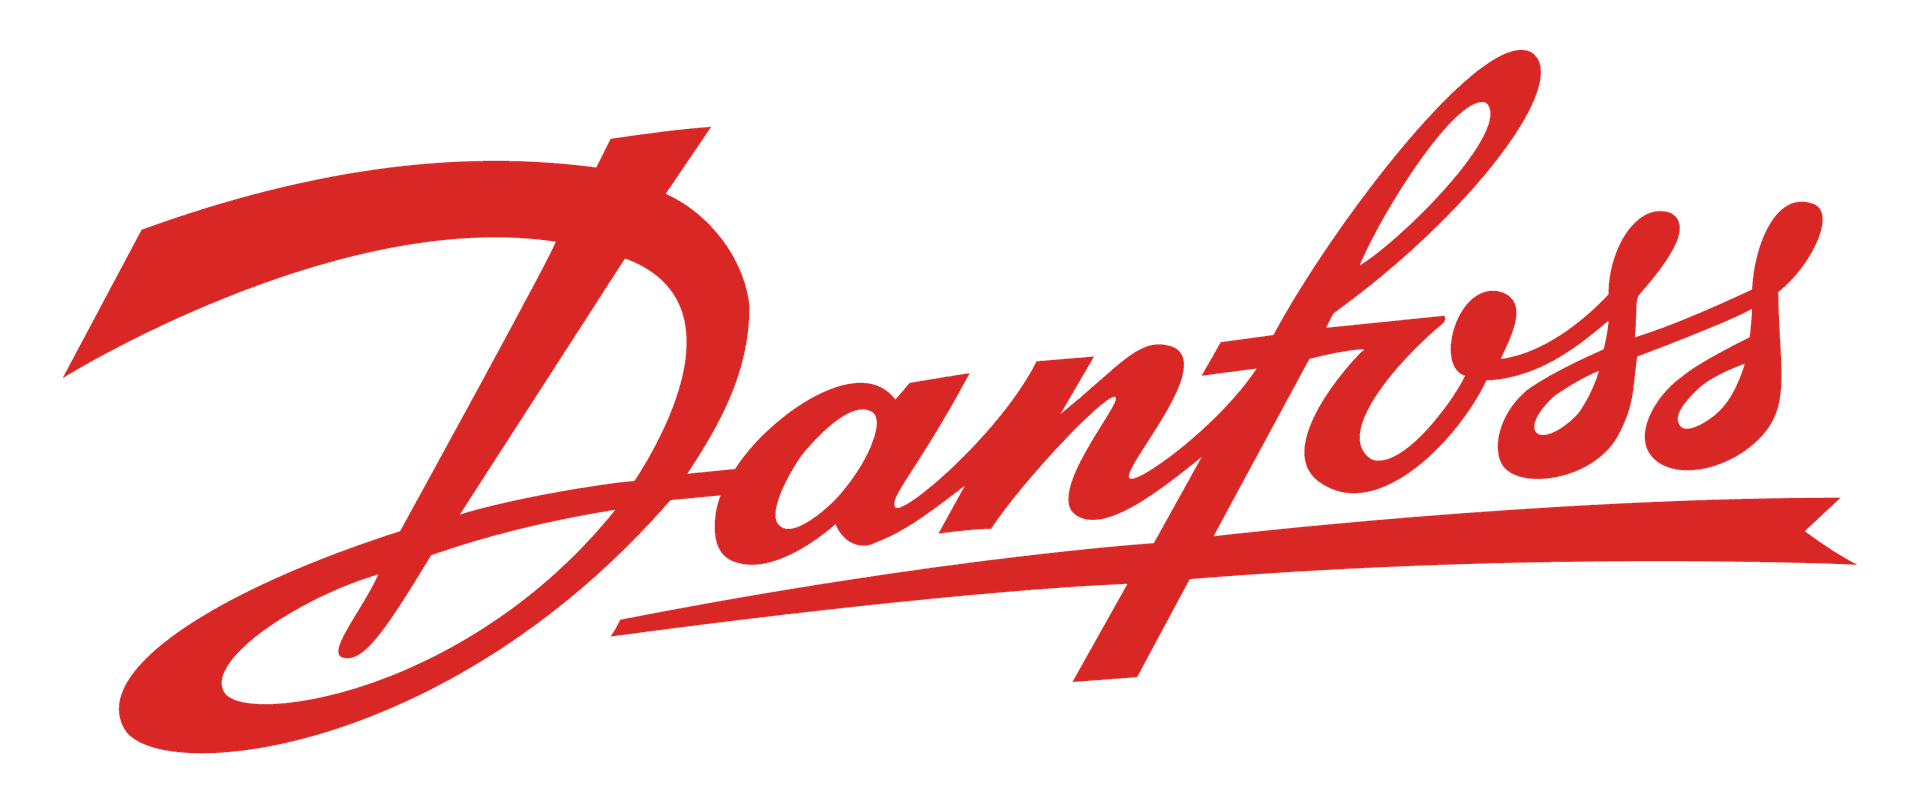 Brand: Danfoss